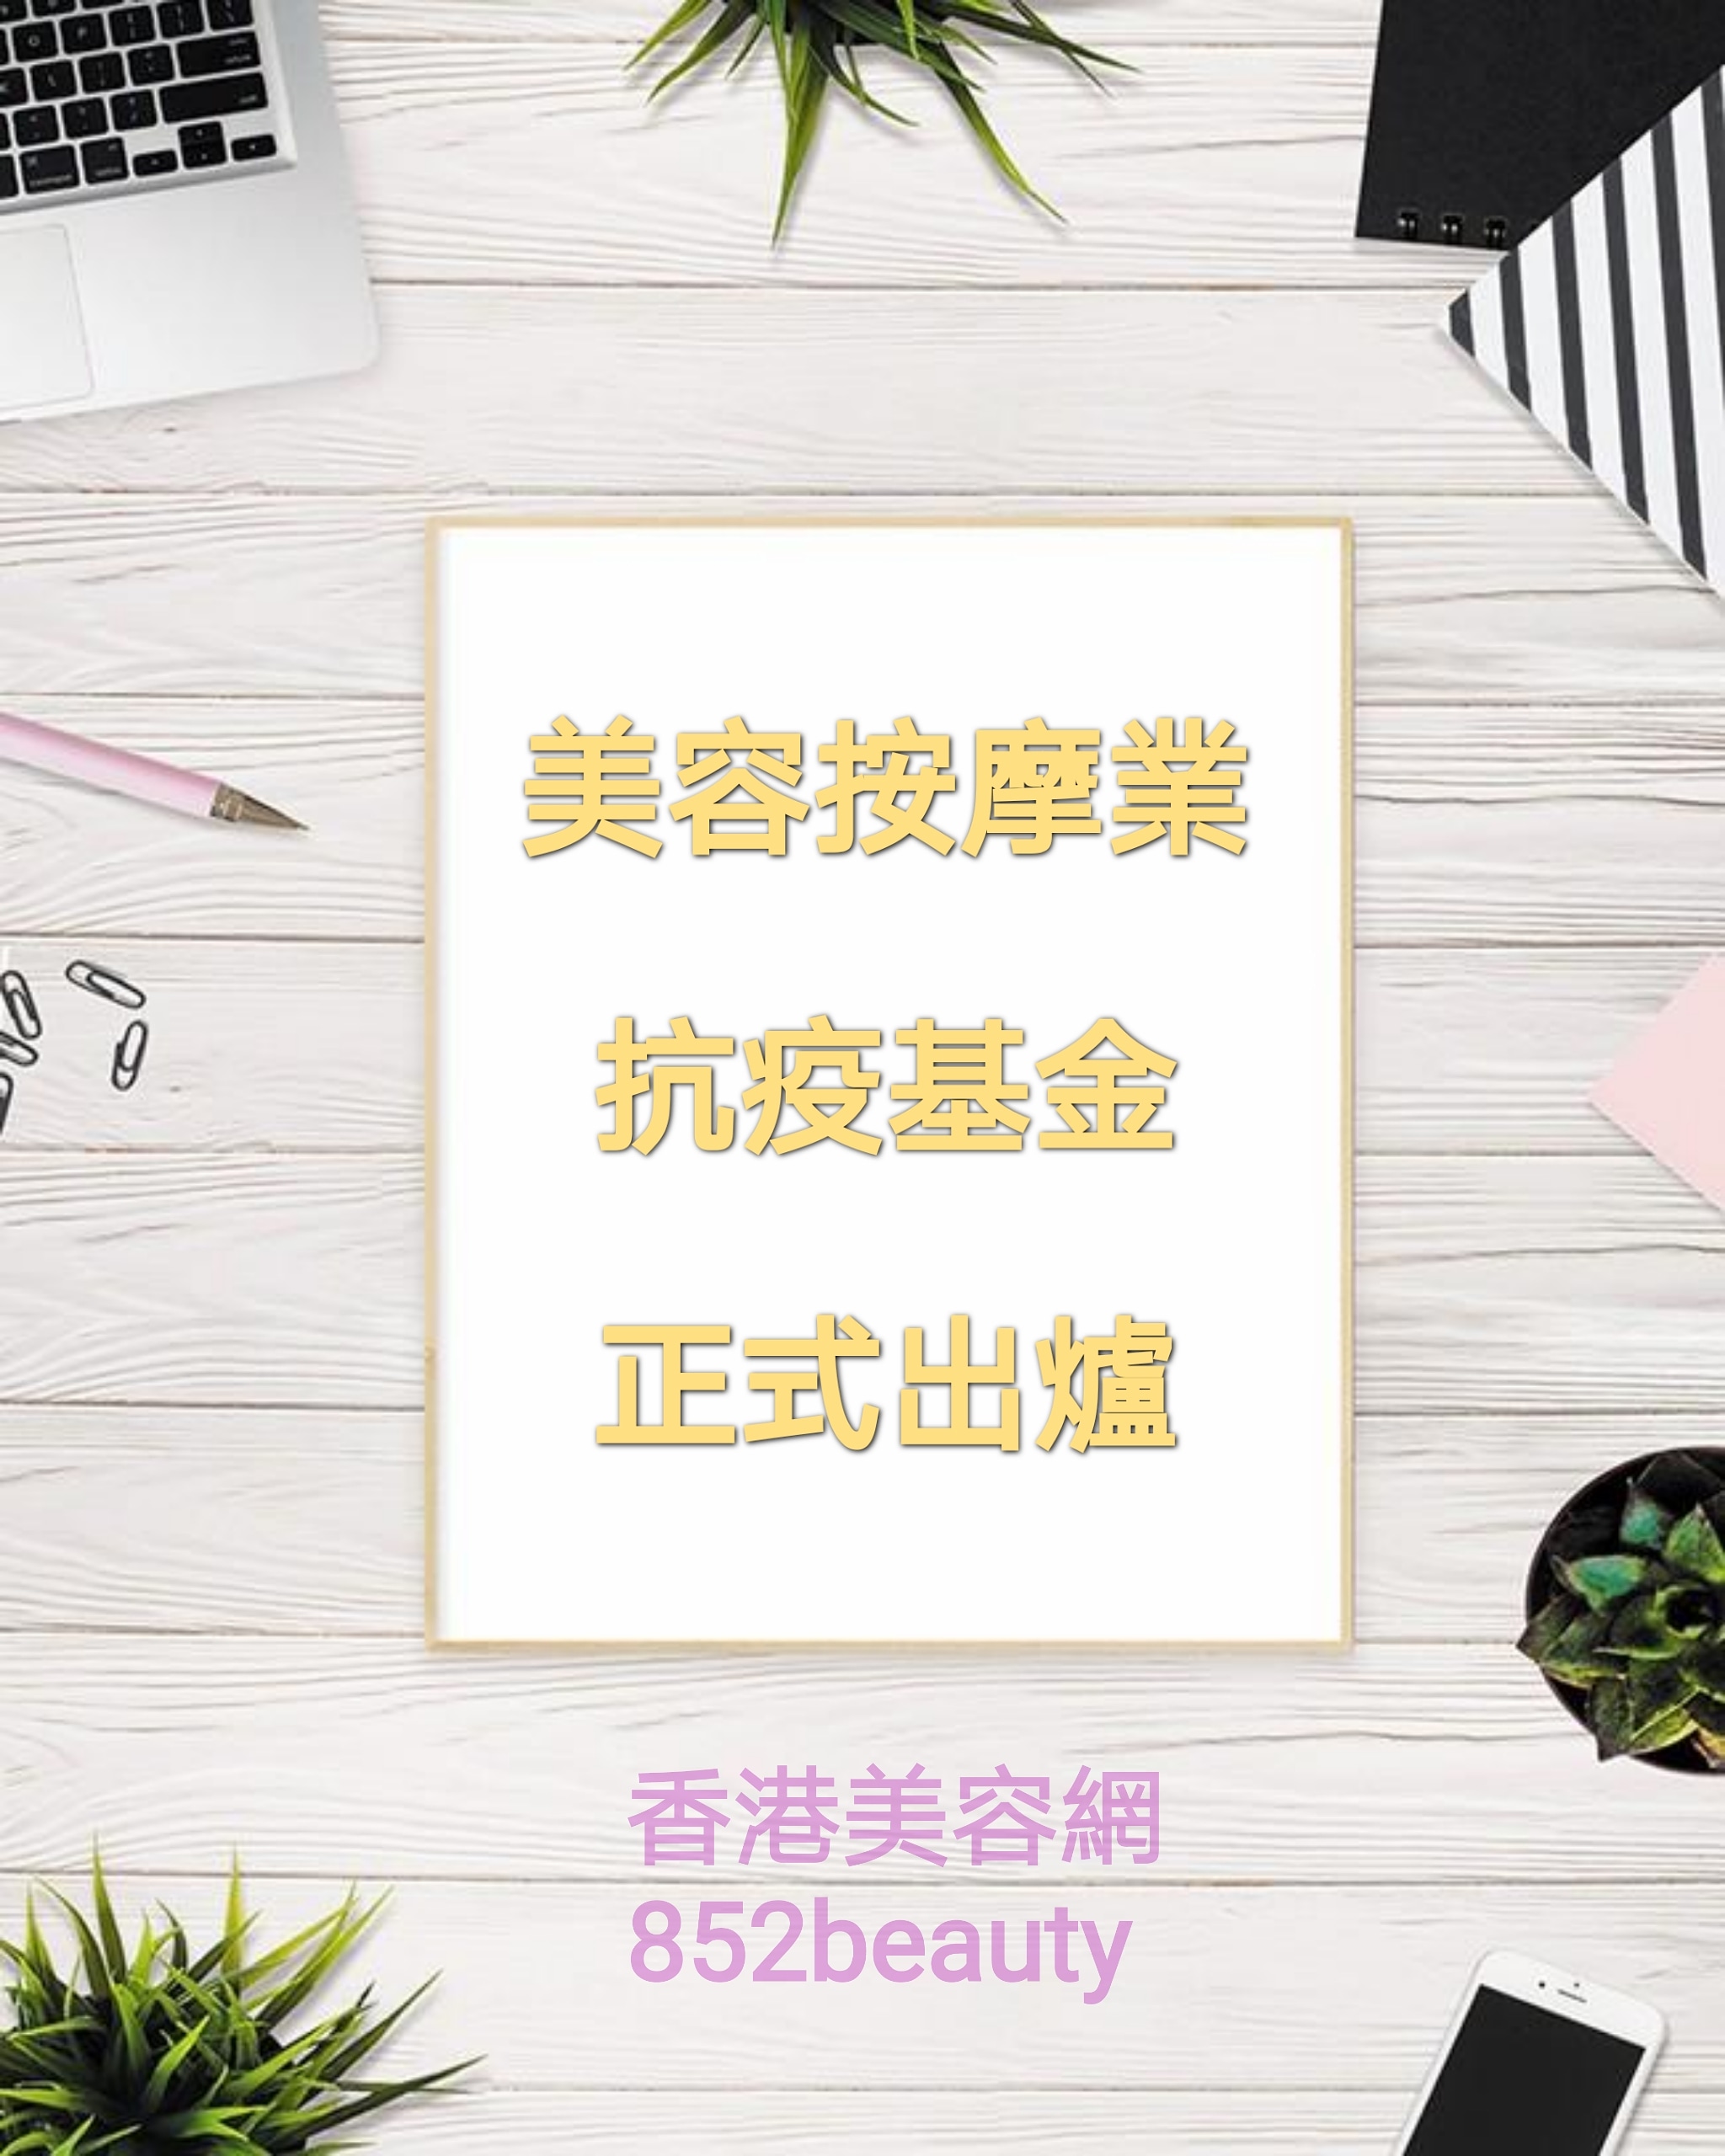 香港美容网 Hong Kong Beauty Salon 最新美容资讯: 第一輪防疫抗疫基金「美容院、按摩院及派對房間資助計劃」